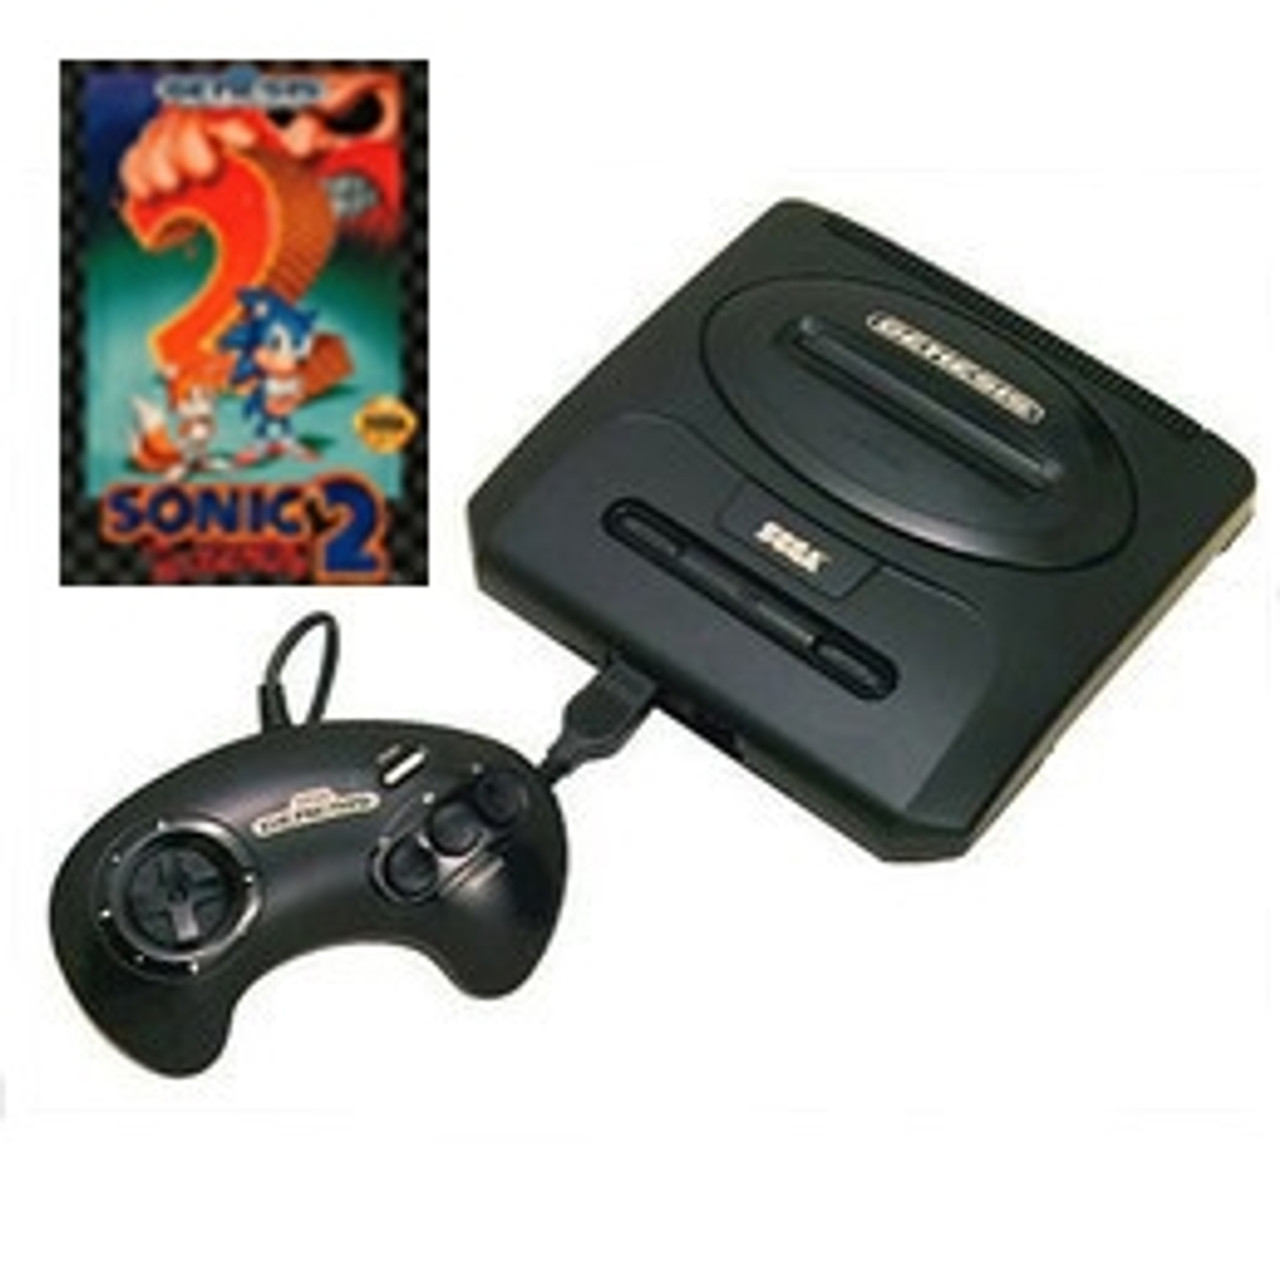 Sega Genesis 2 Console 